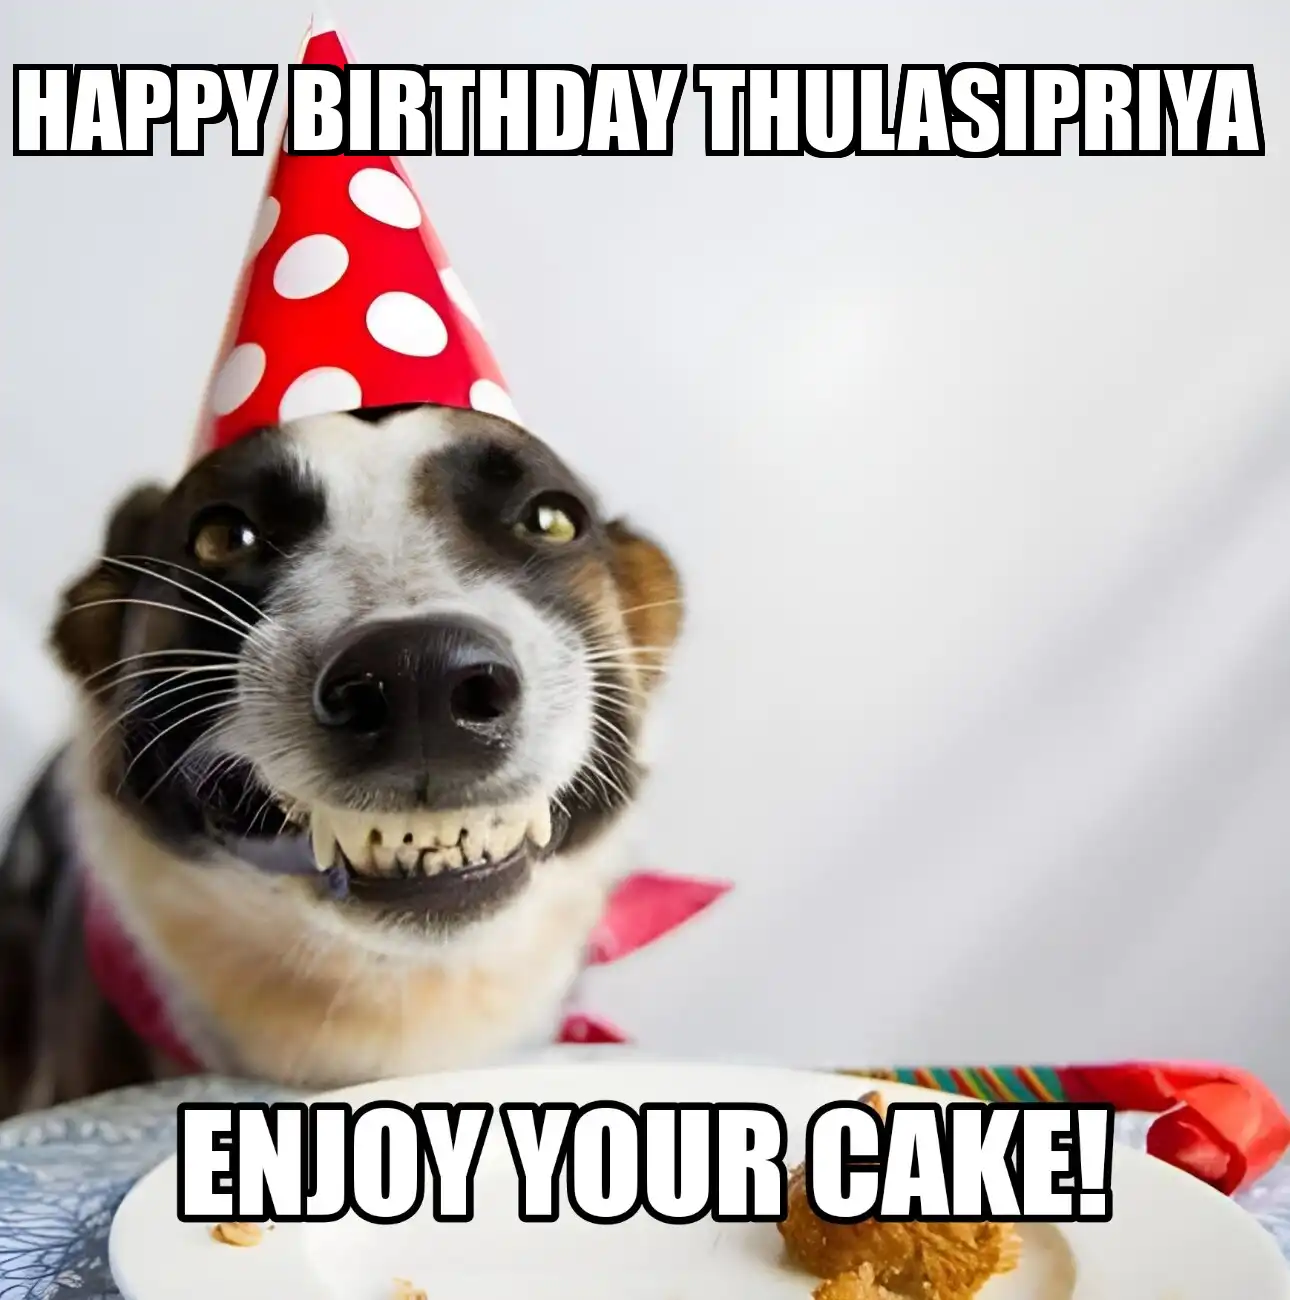 Happy Birthday Thulasipriya Enjoy Your Cake Dog Meme